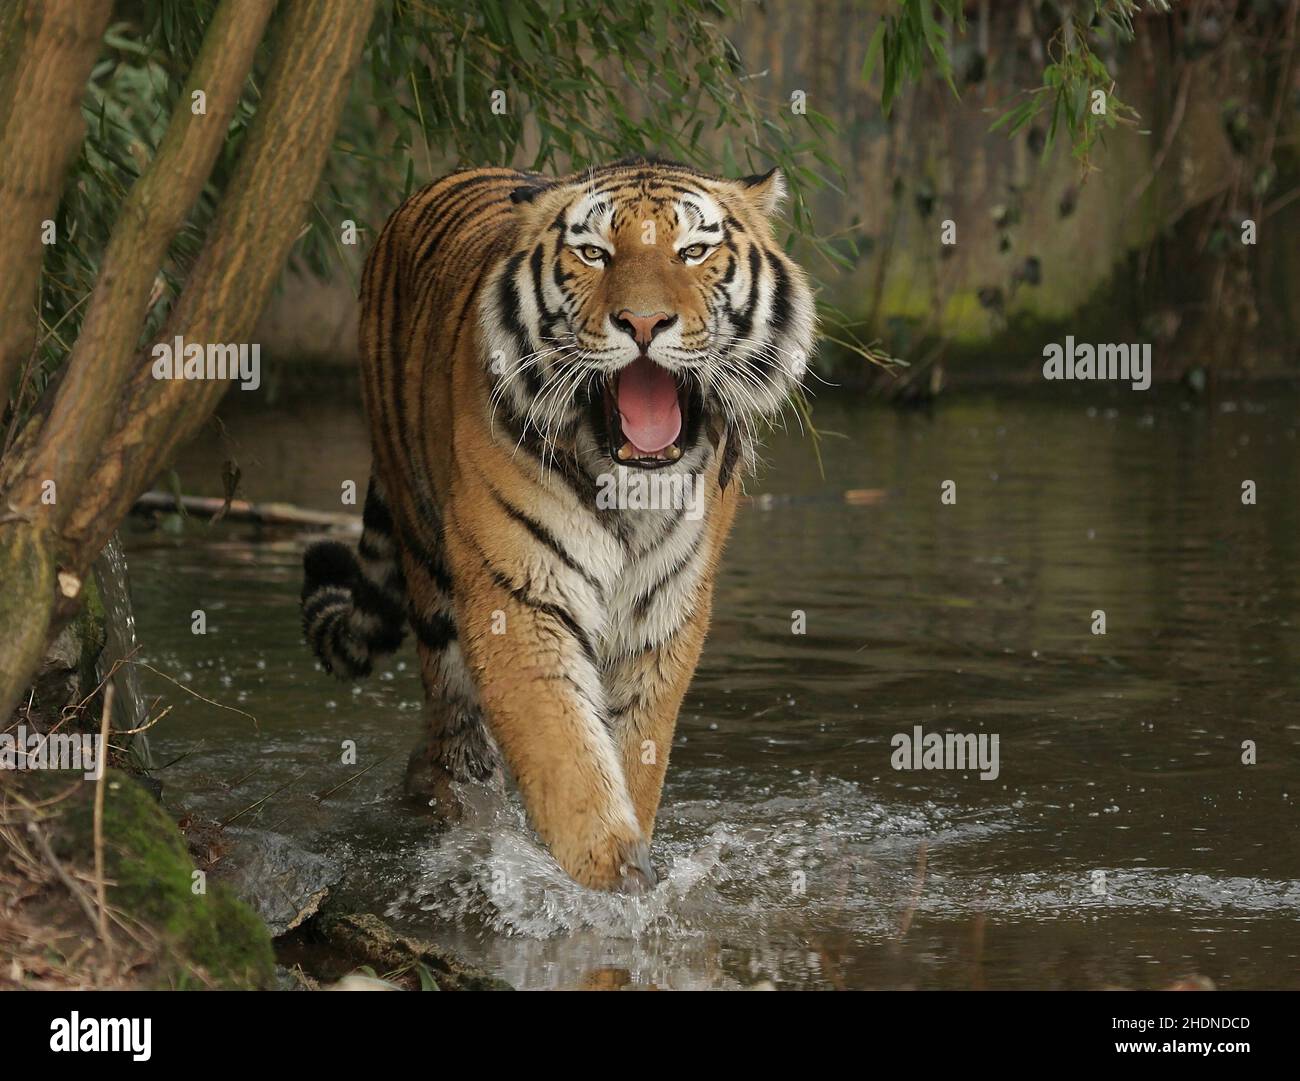 tiger, siberian tiger, tigers, siberian tigers Stock Photo